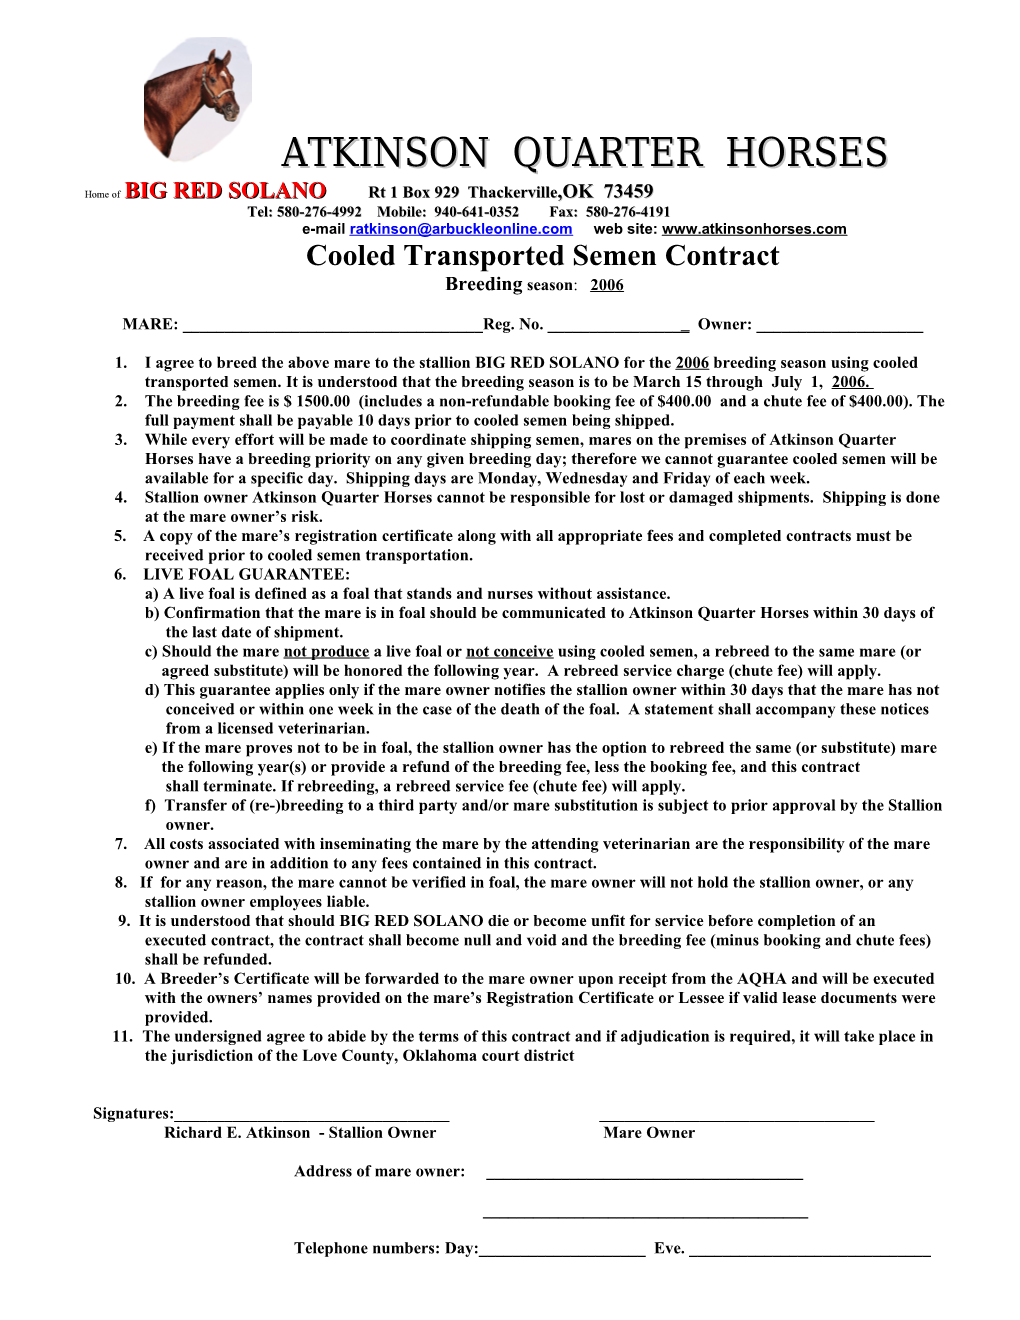 Atkinson Quarter Horses